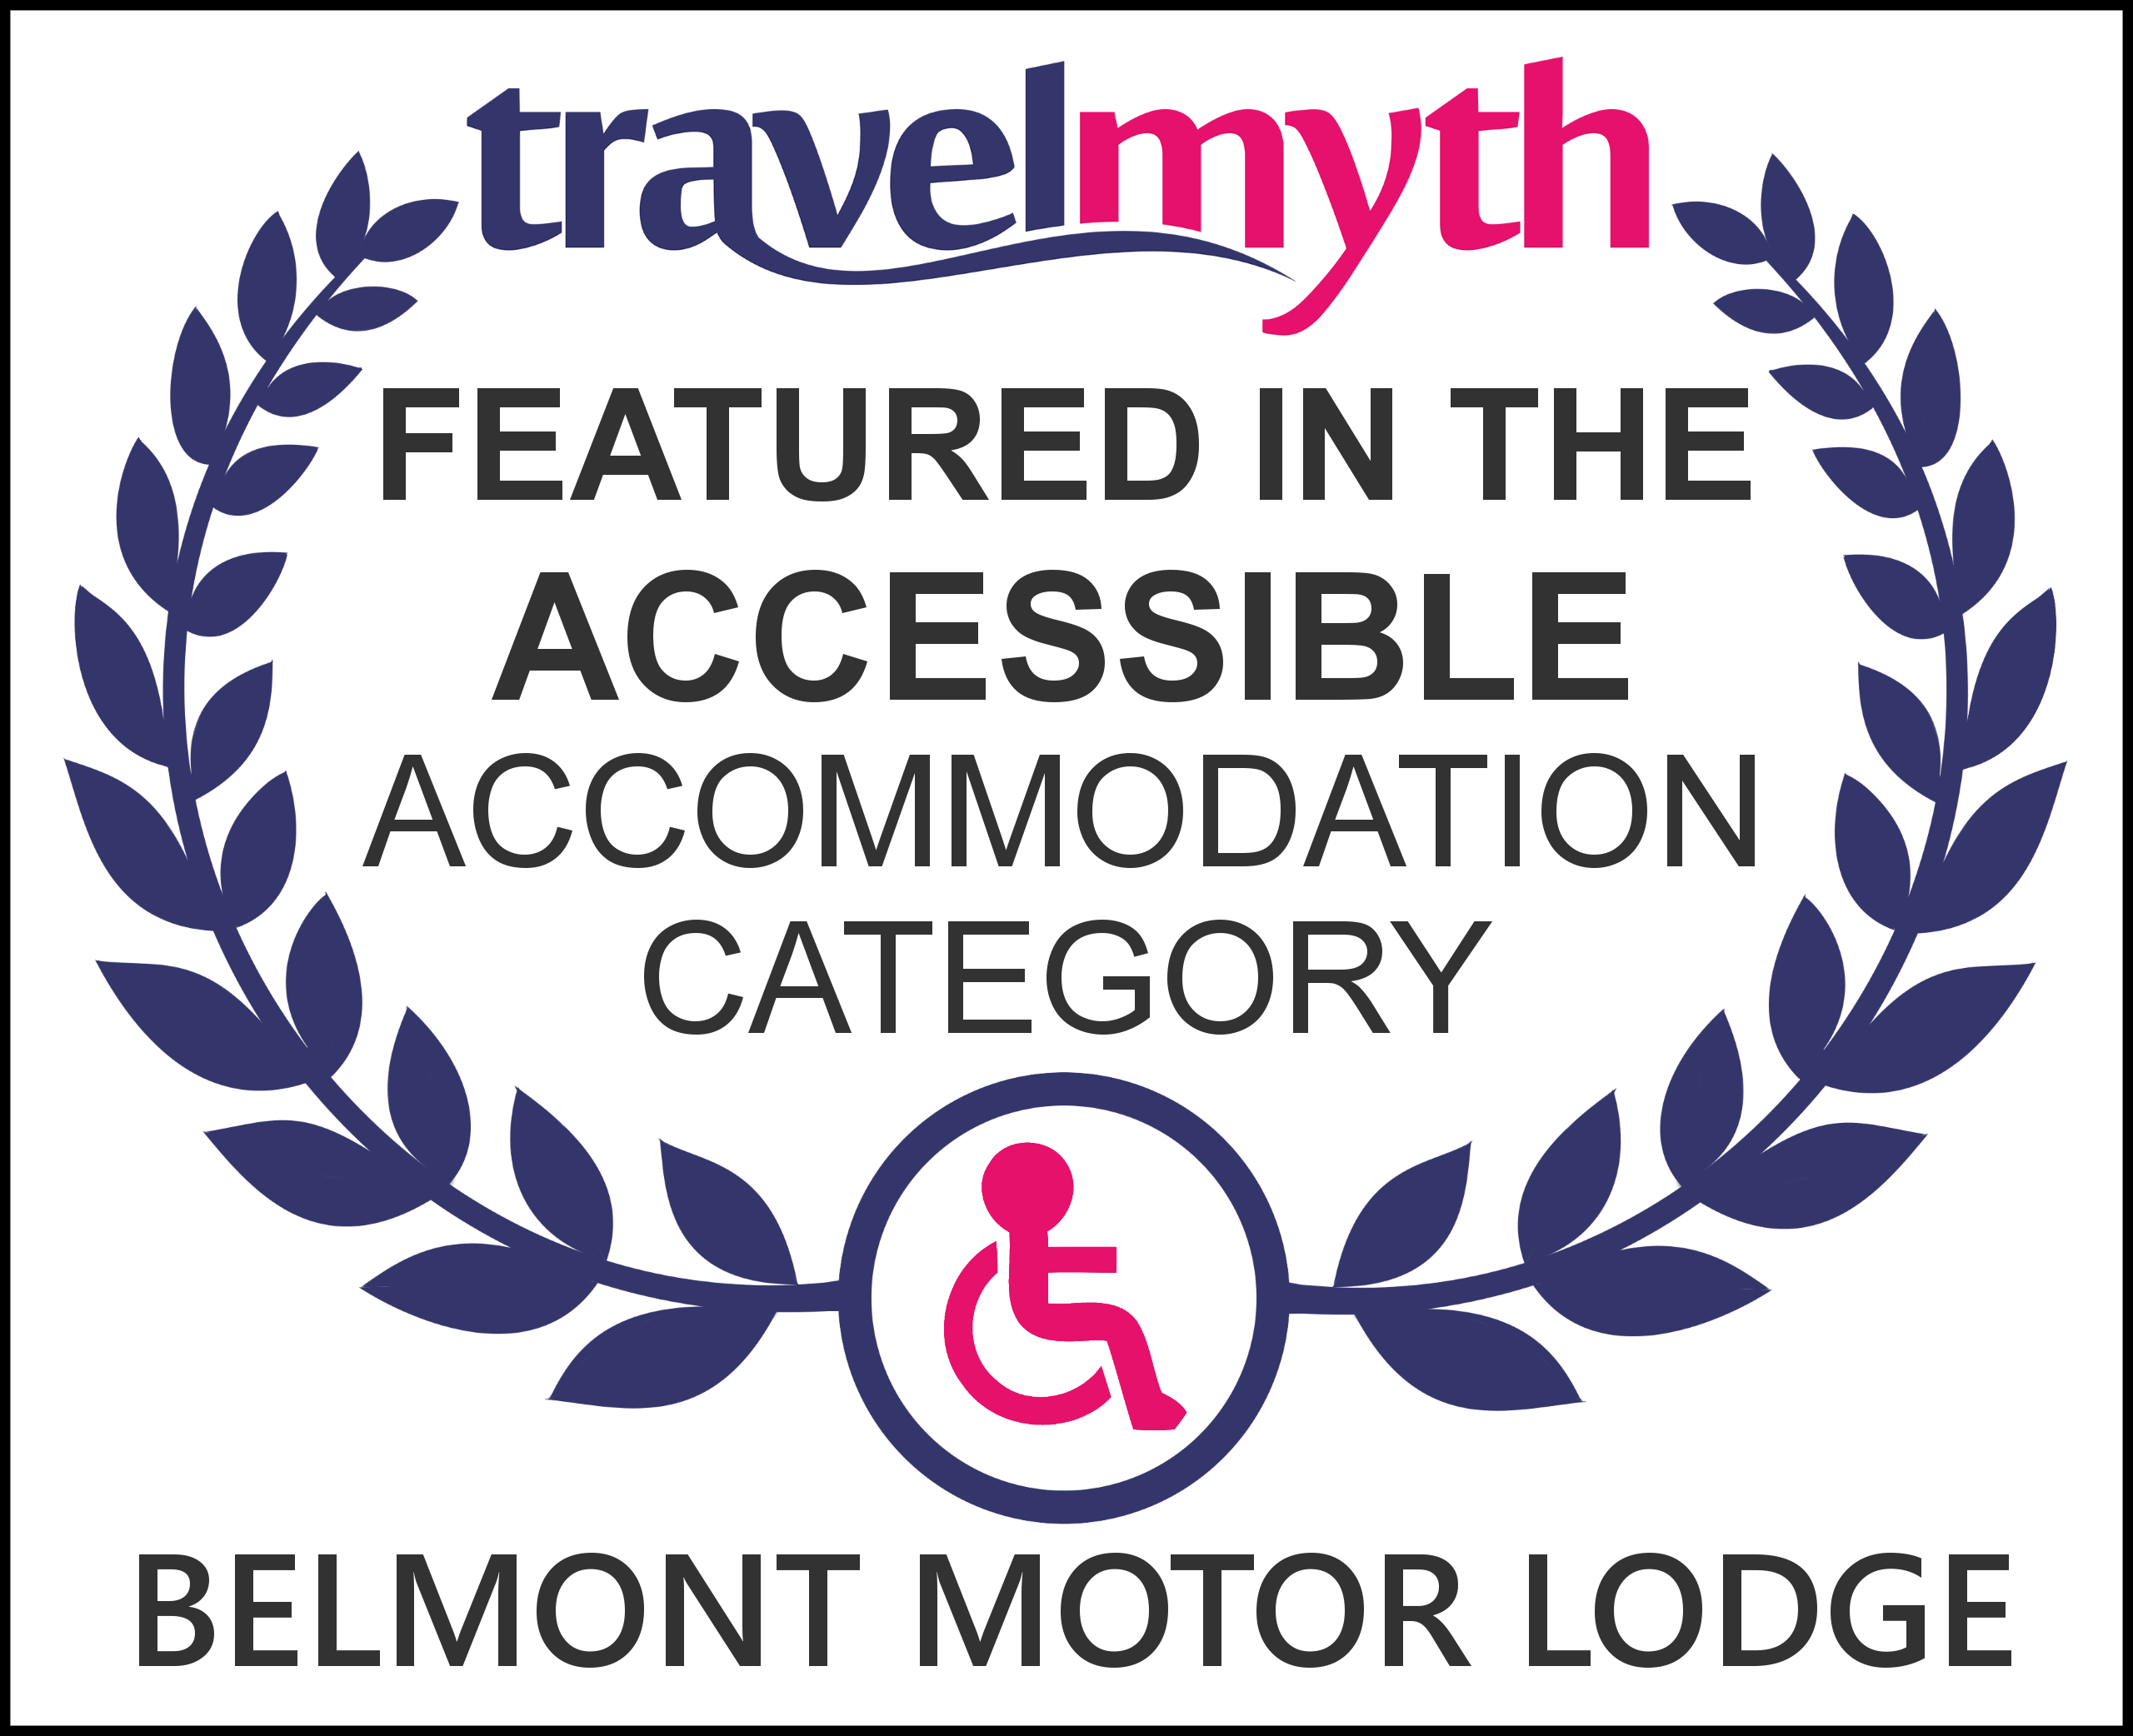 Travel myth award